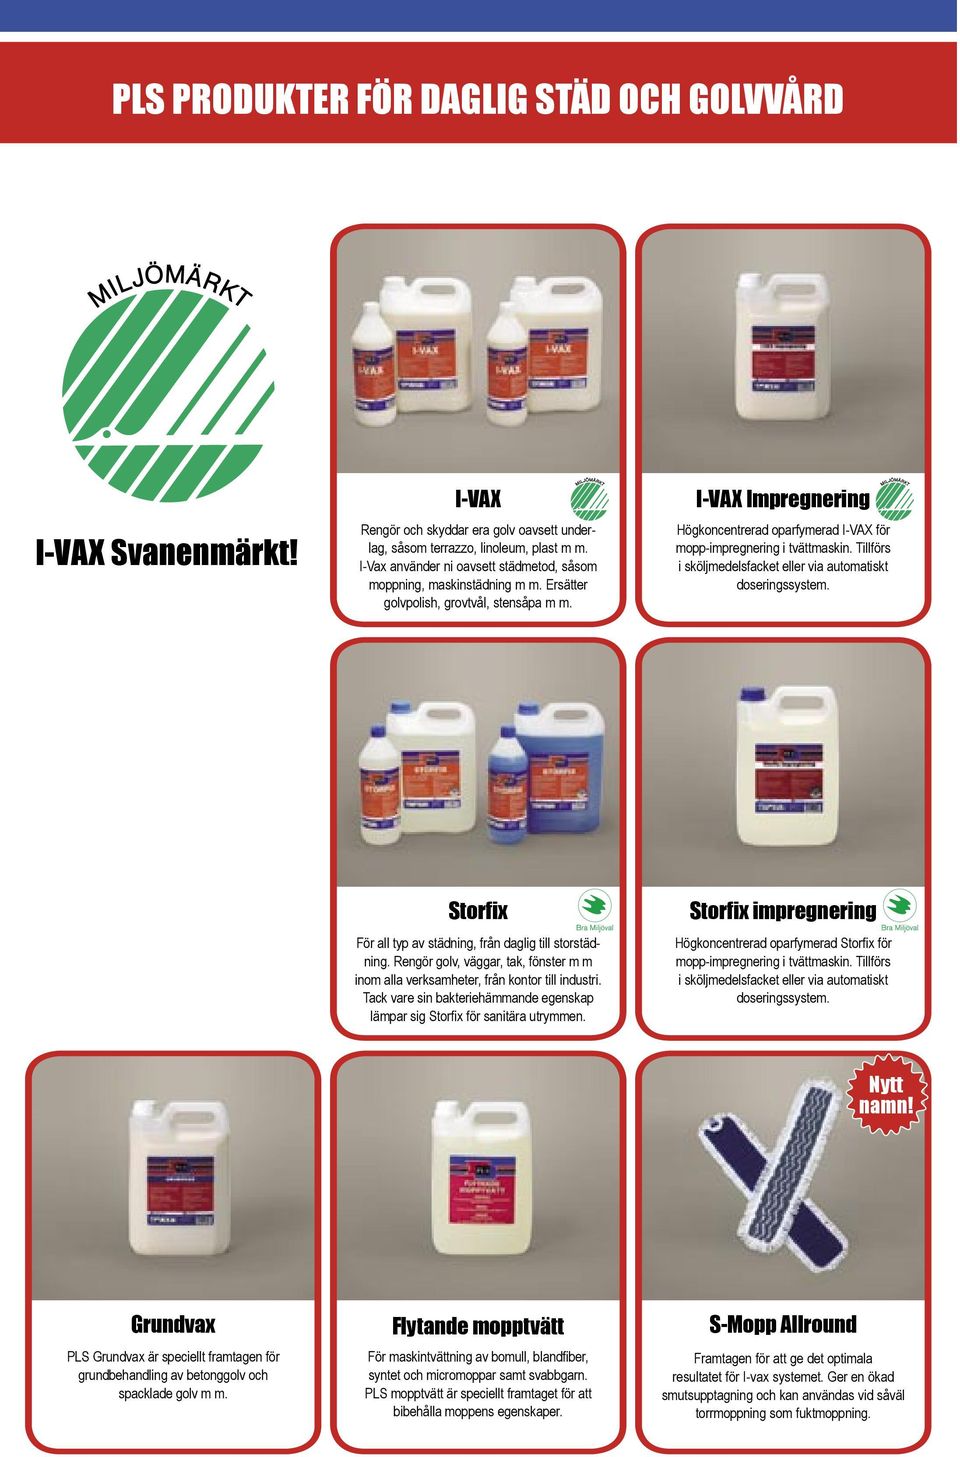 I-VAX Impregnering Högkoncentrerad oparfymerad I-VAX för mopp-impregnering i tvättmaskin. Tillförs i sköljmedelsfacket eller via automatiskt doseringssystem.